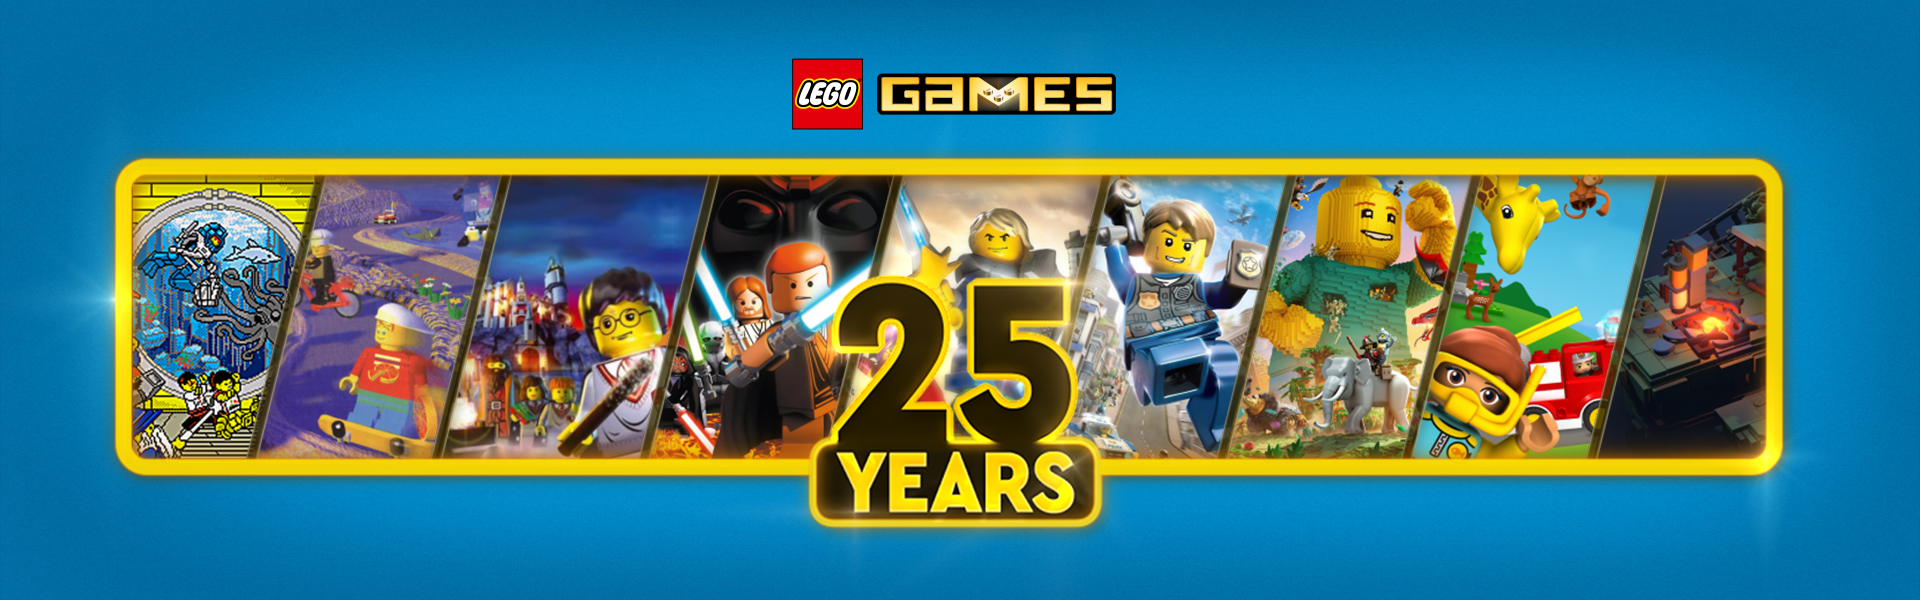 Les Jeux Videos Lego Fetent Leurs 25 Ans Mintinbox